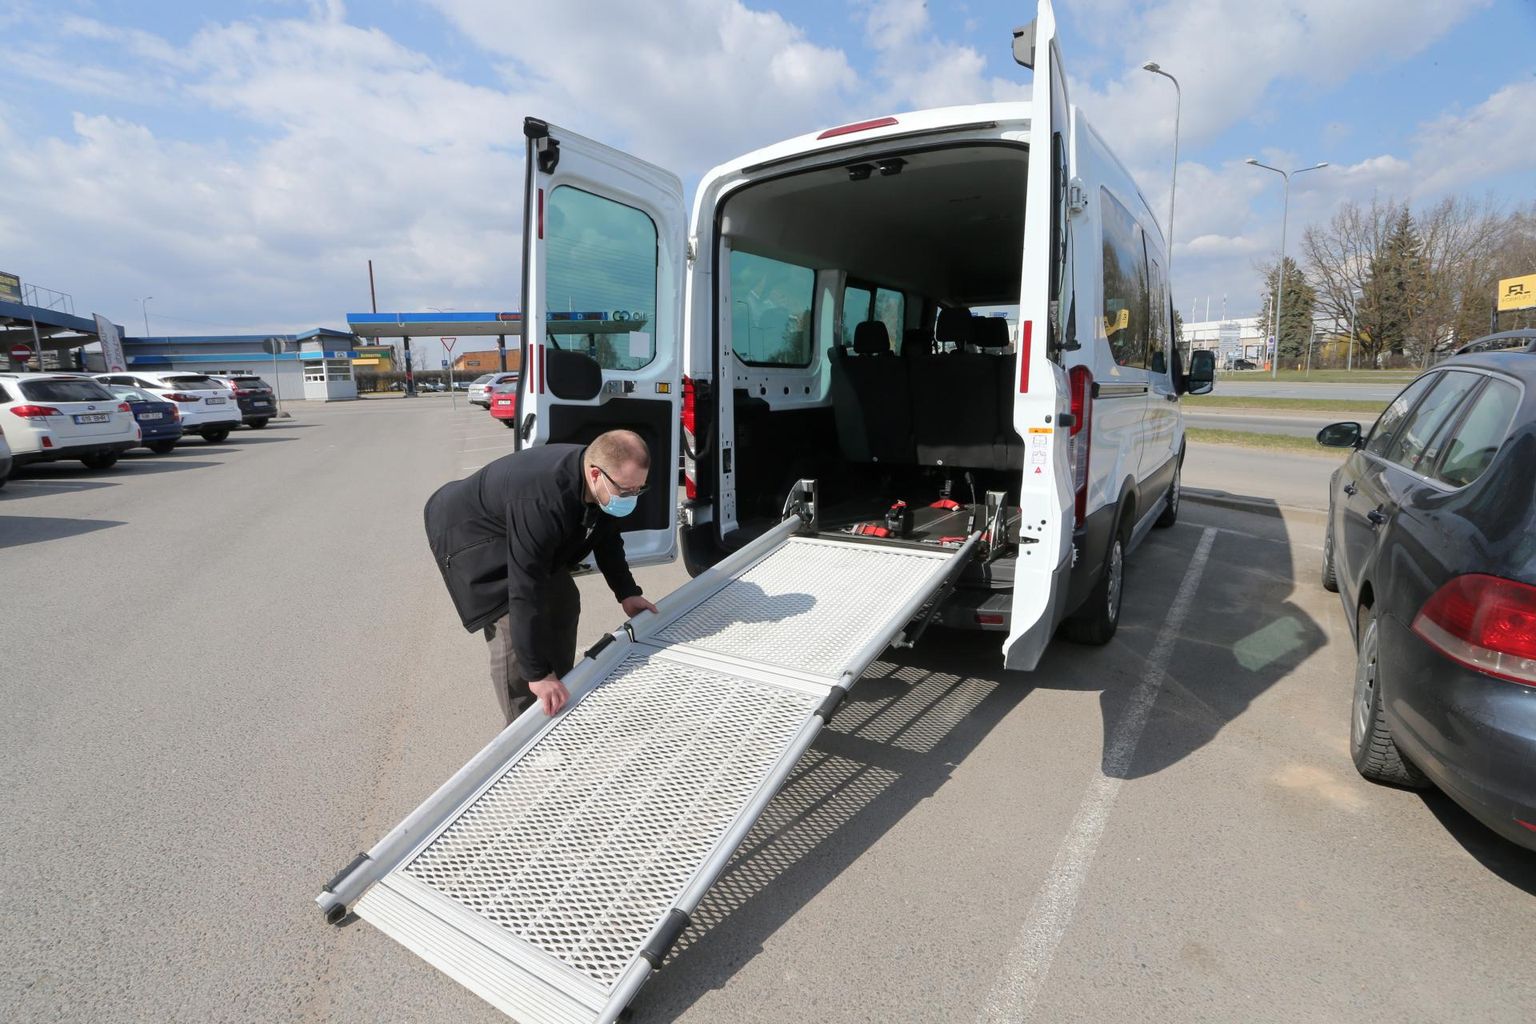 Autojuht Oliver Sups näitab, kuidas ratastoolibuss seest välja näeb. Sotsiaaltranspordi sõidukid tunneb ära nende peal oleva kirje «Sõida minuga!» järgi.